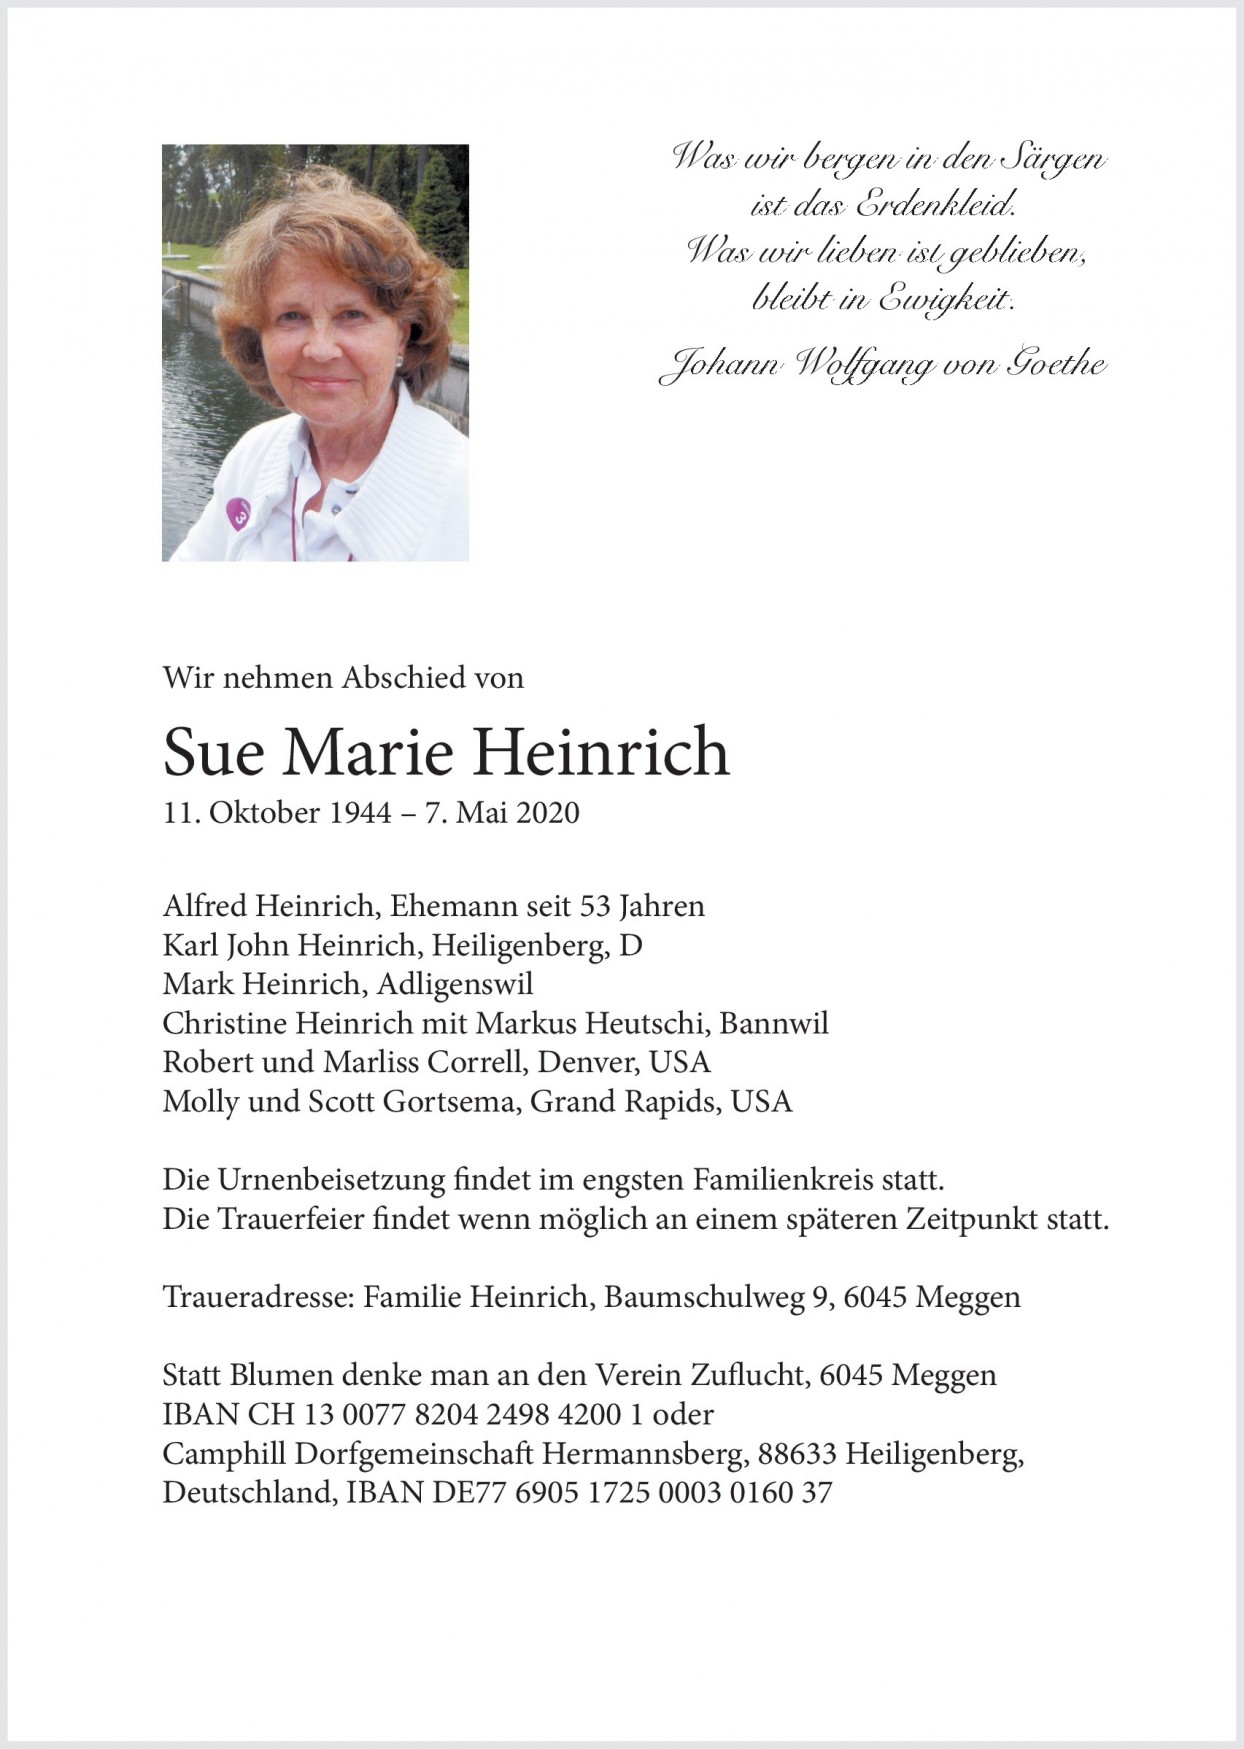 Sue Marie Heinrich